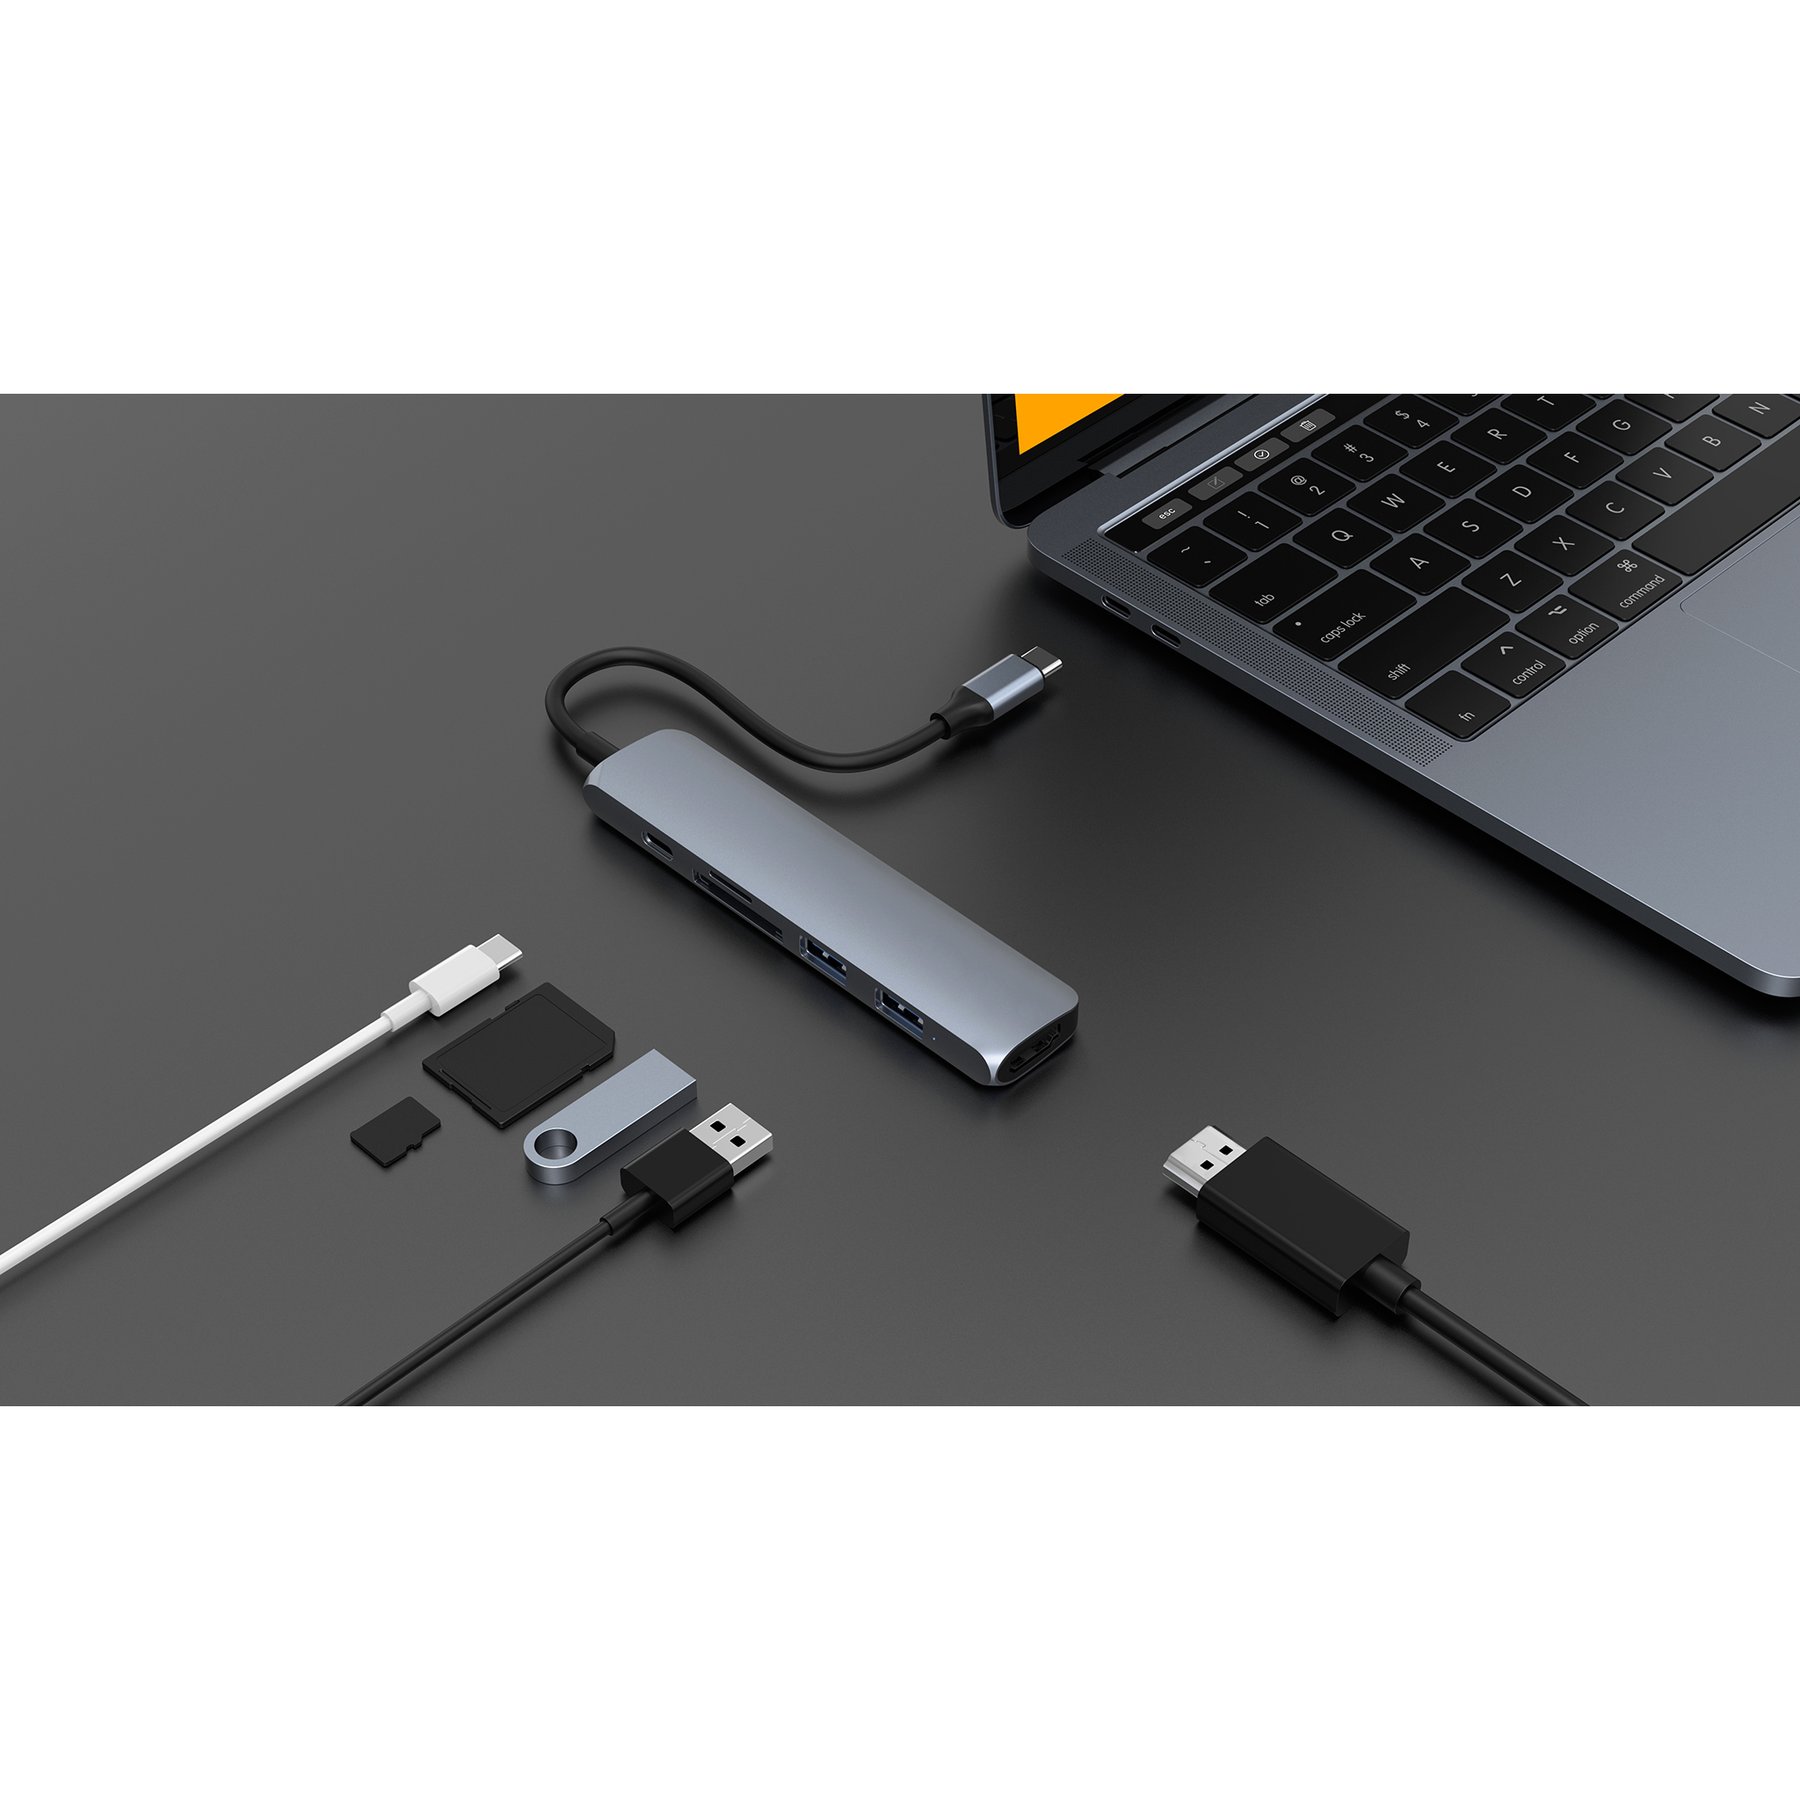 Cổng Chuyển Đổi HYPERDRIVE Bar 6 In 1 Usb-C Hub For MacBook, Surface, Pc And Devices – HD22E - Hàng Chính Hãng